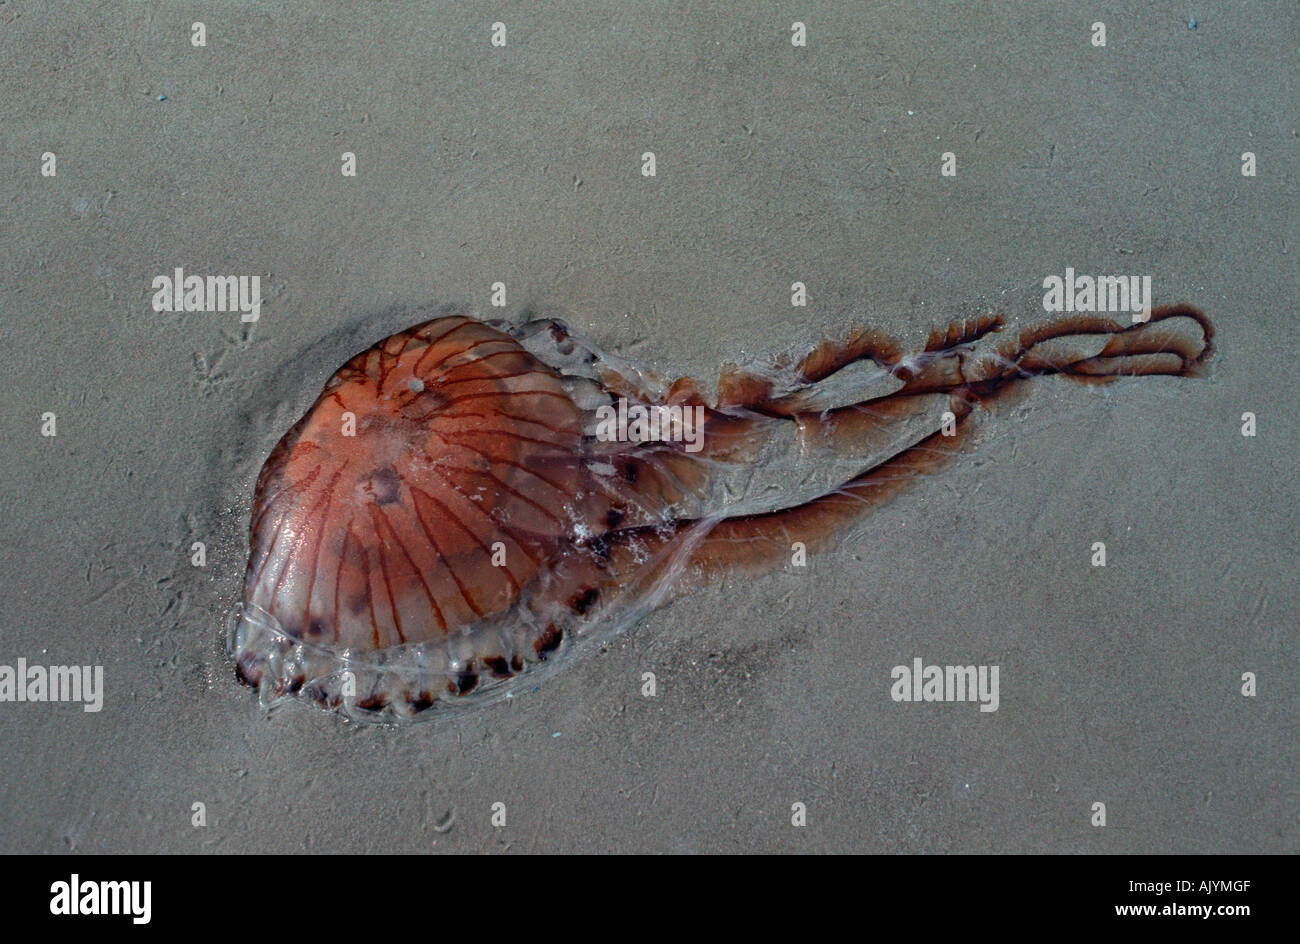 Compass Jellyfish / Sea Nettle  / Kompassqualle Stock Photo